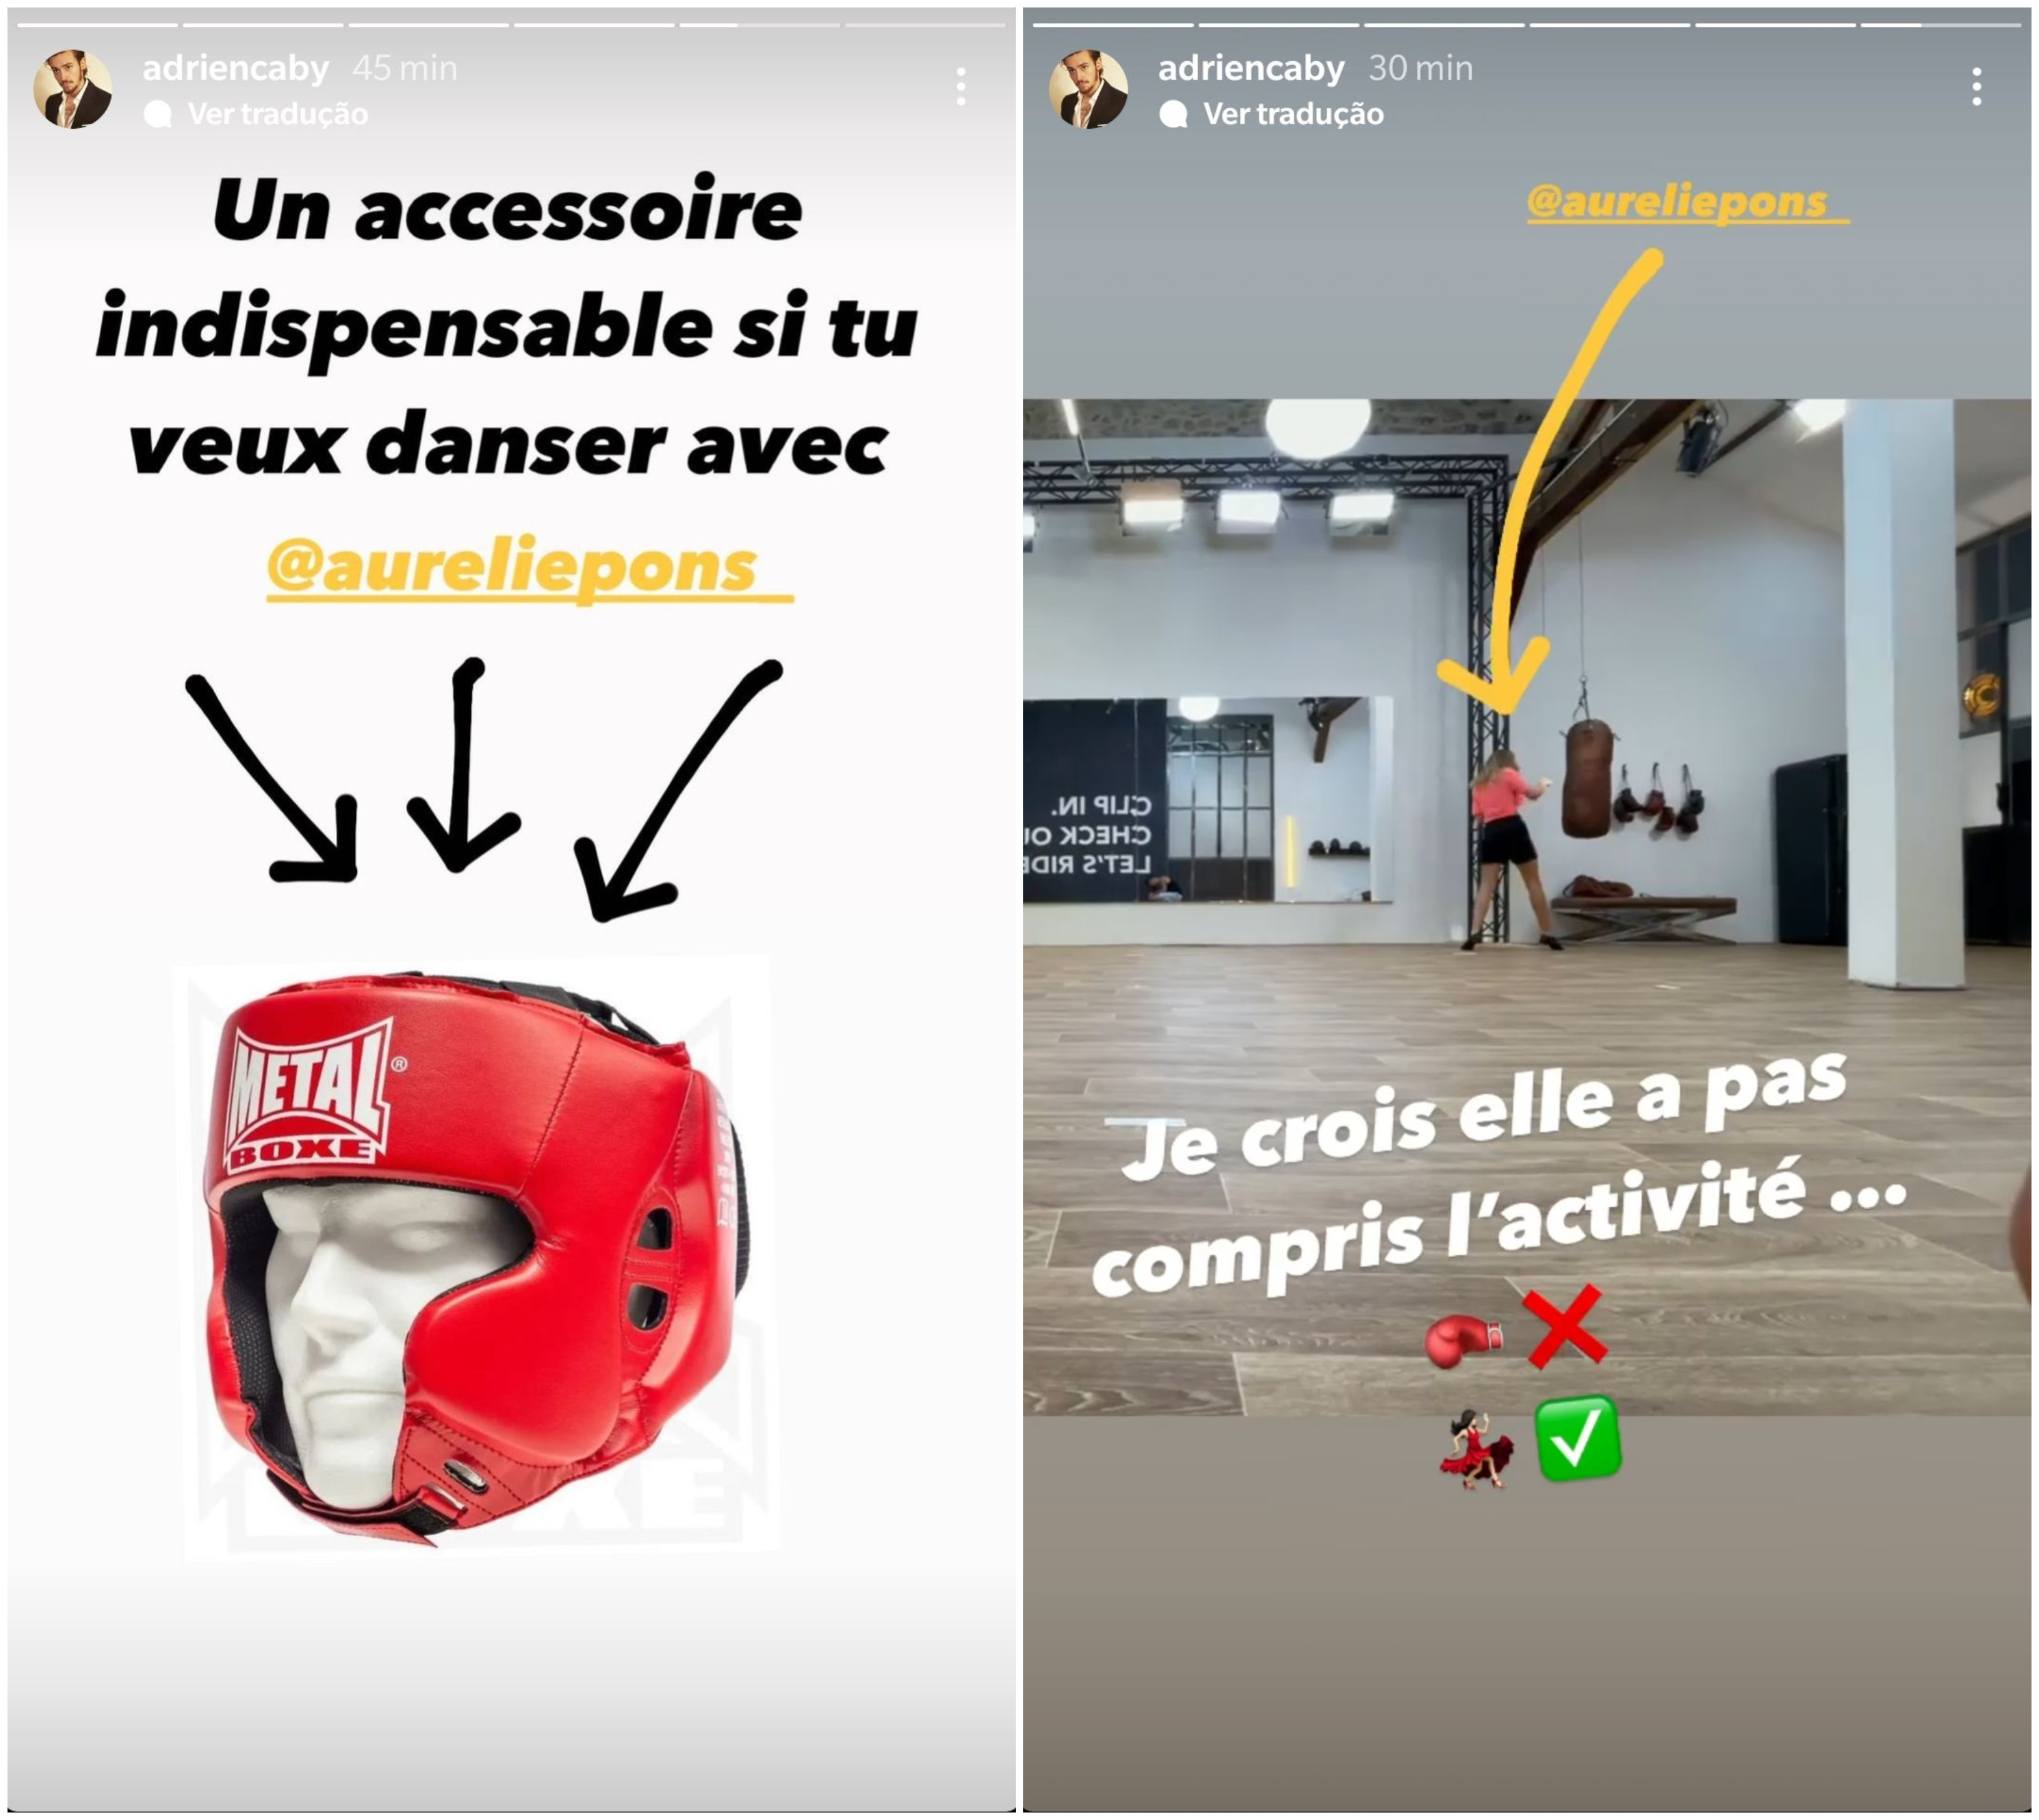  Aurélie Pons avour avoir blessé Adrien Caby @Instagram